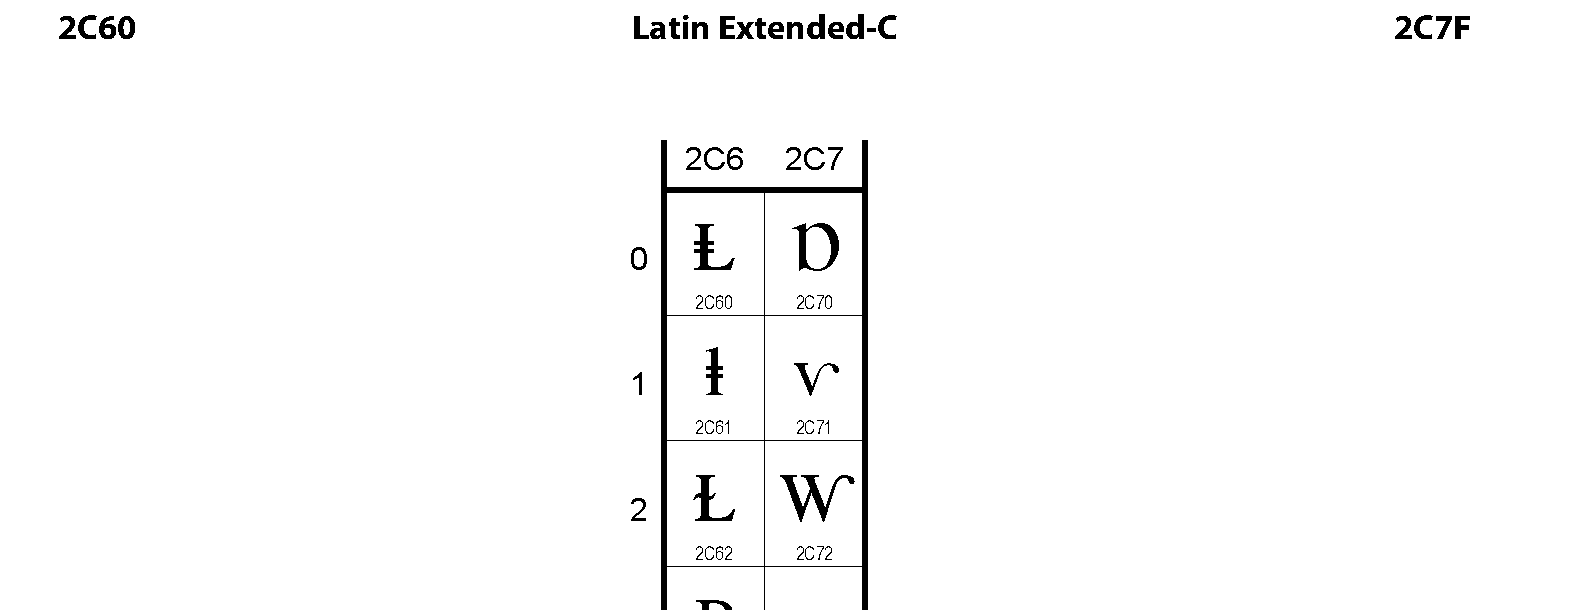 Unicode - Latin Extended-C